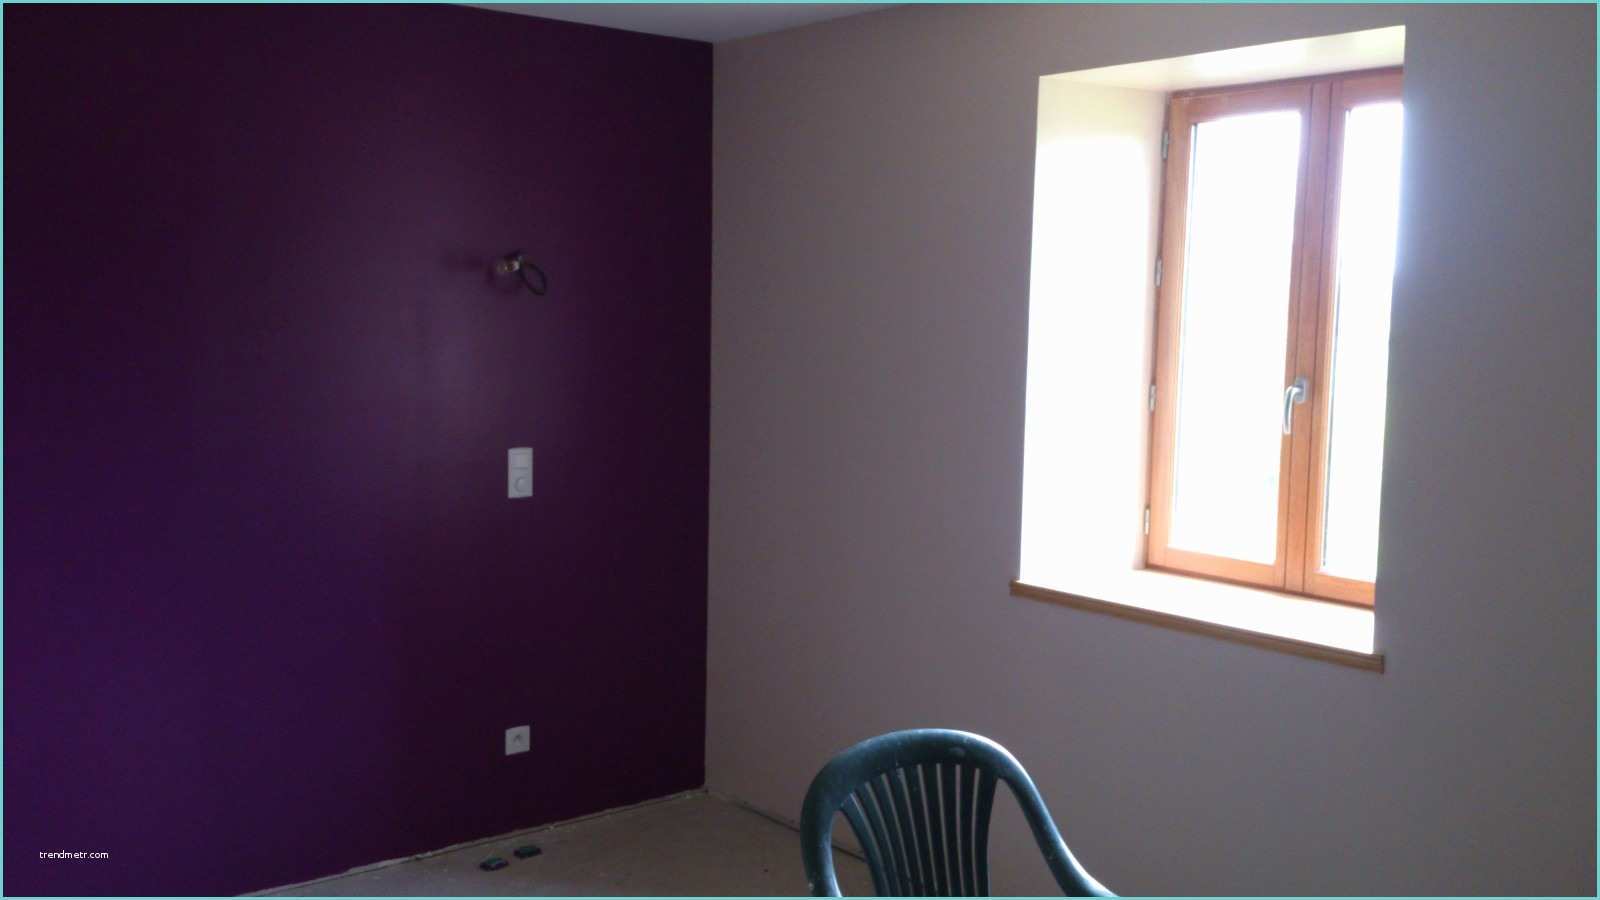 Chambre Grise Et Violette Chambre Violette Et Lin Renovation D Une Fermette En